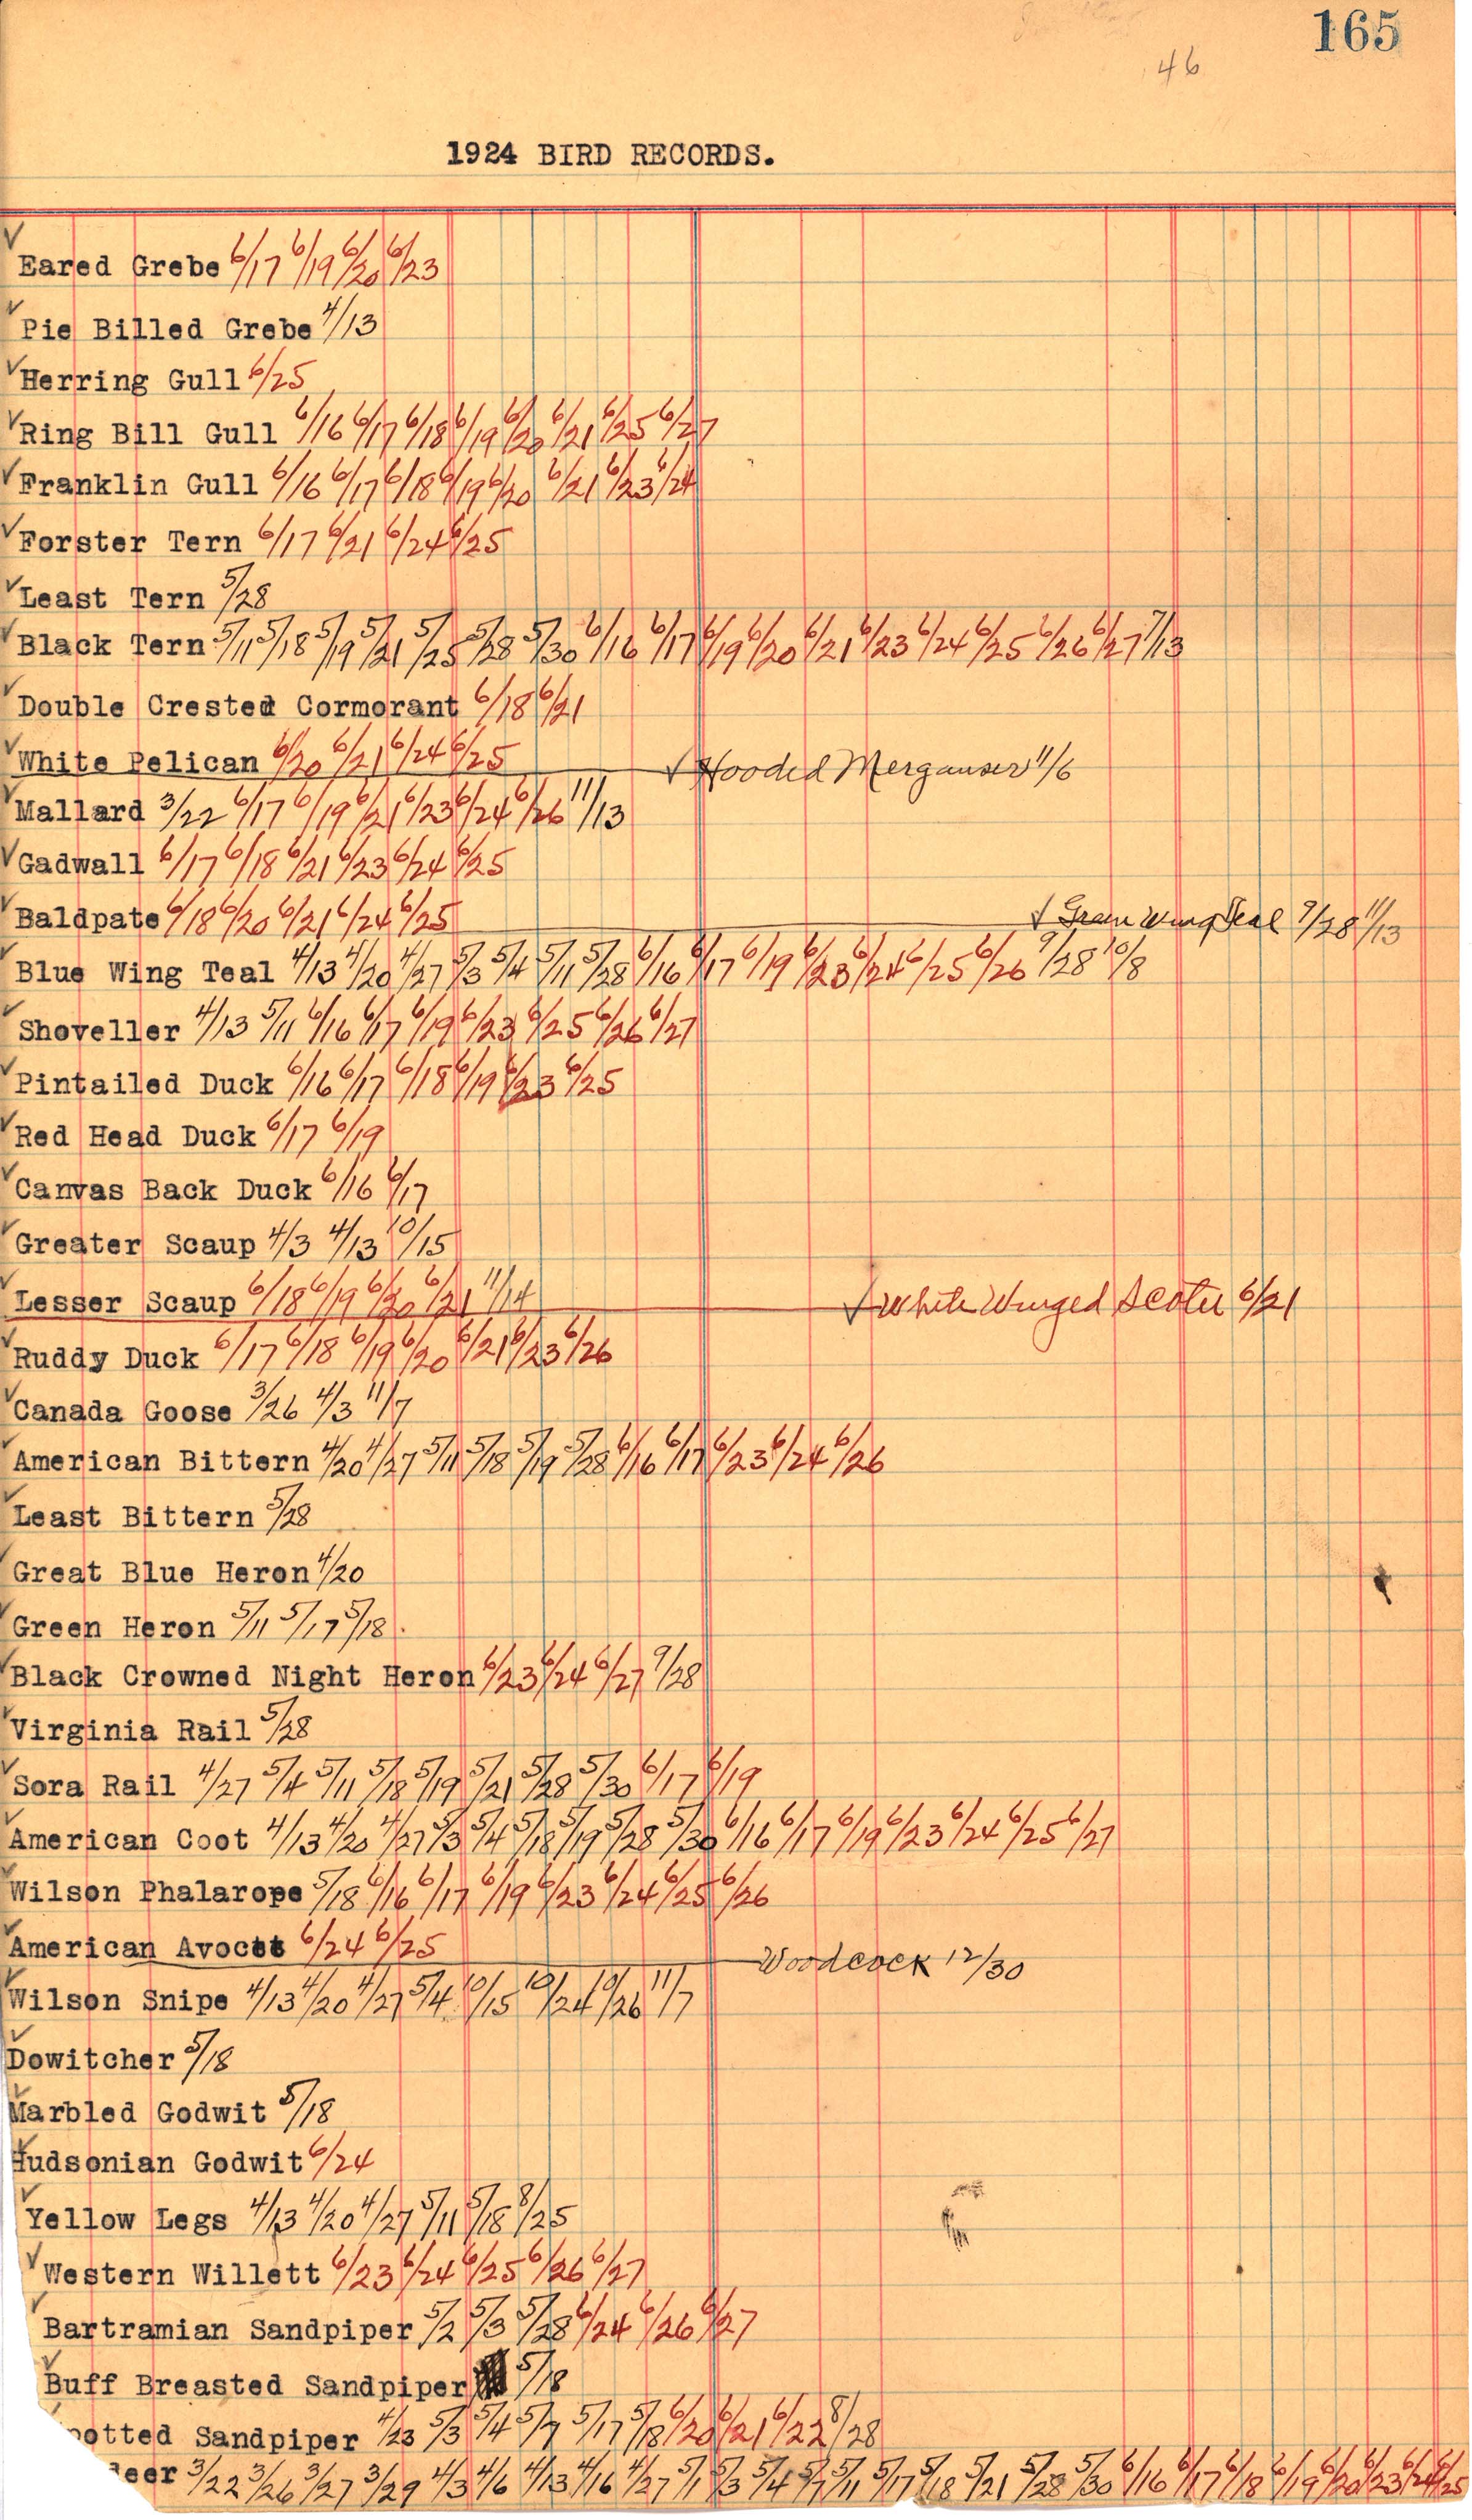 Walter Rosene 1924 bird sighting records